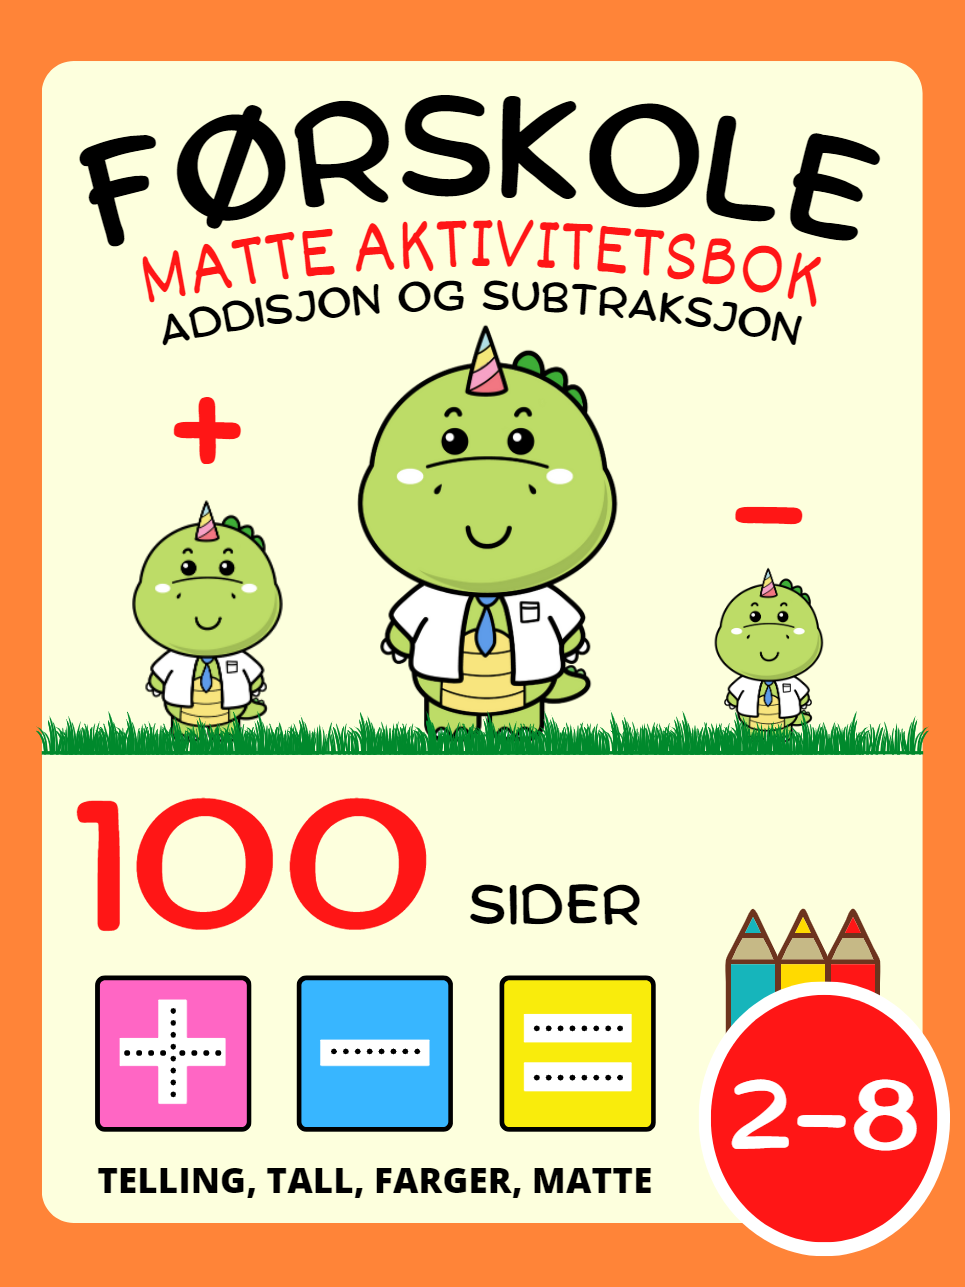 Førskole Matte Aktivitetsbok for barn i alderen 2-4-8 år, Addisjon og Subtraksjon, Pluss og Minus